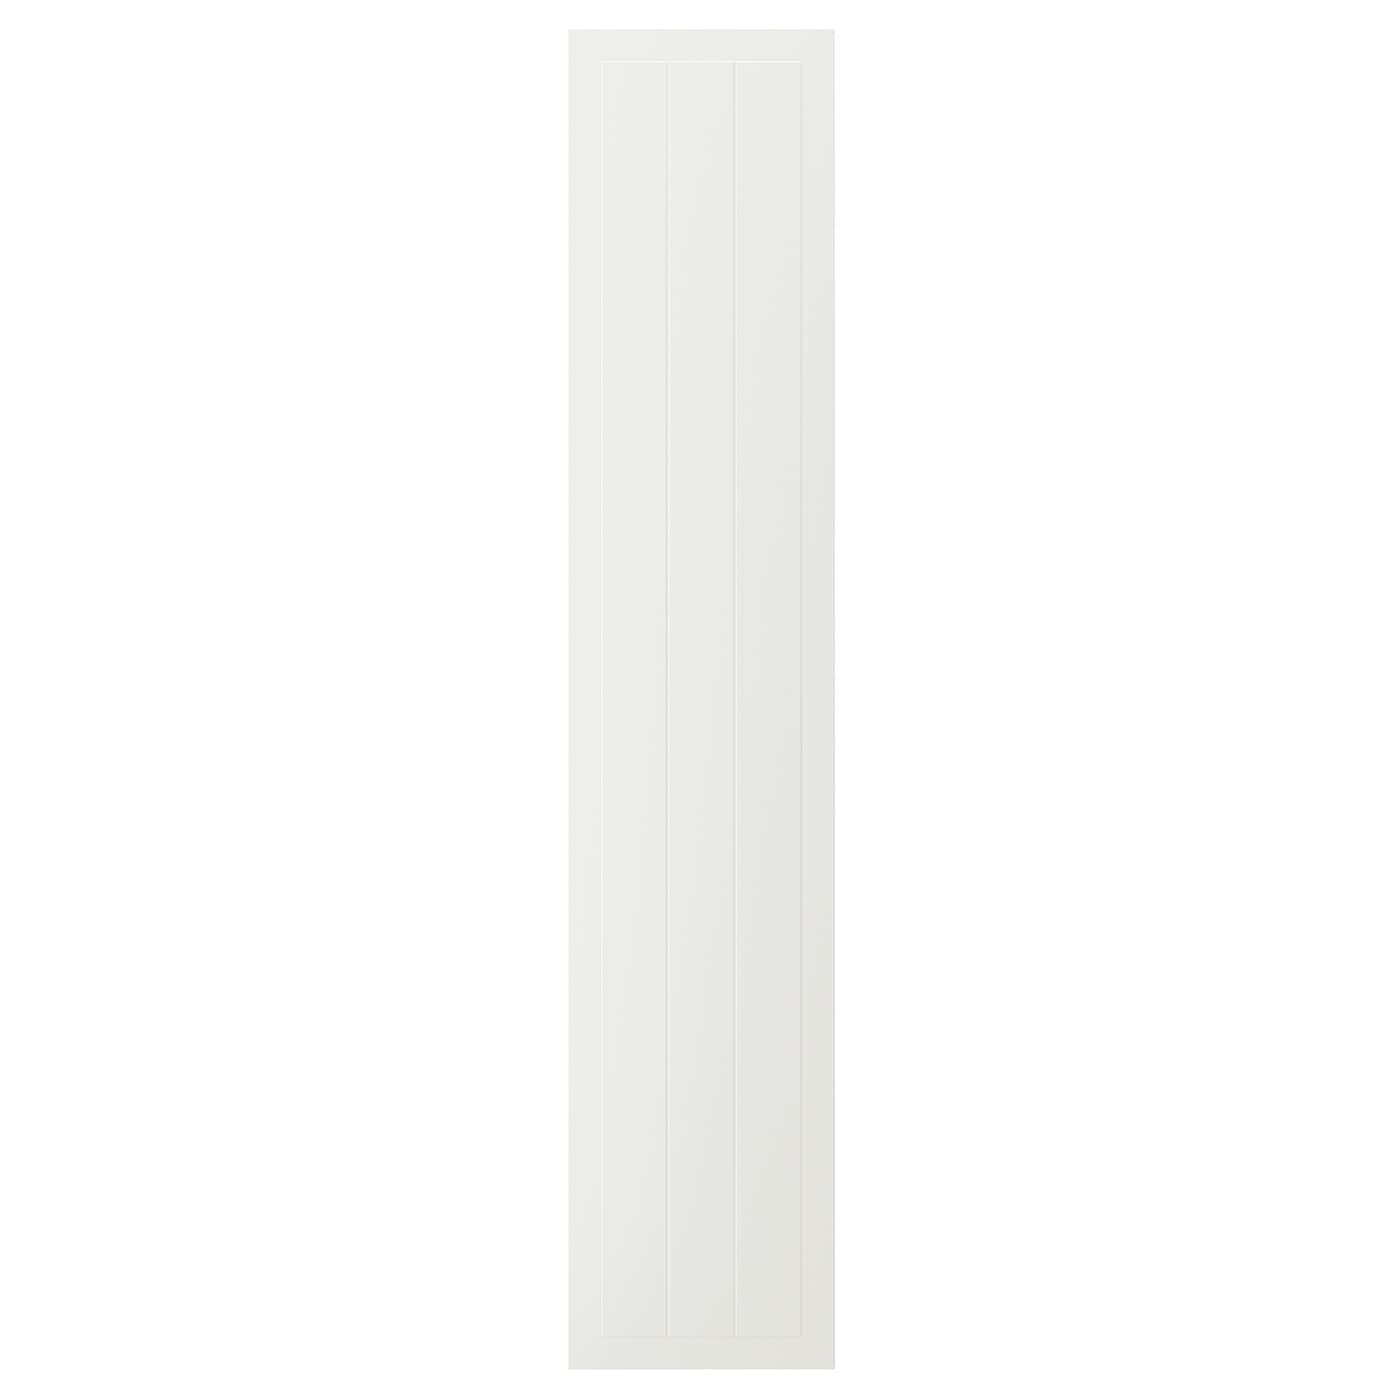 Фасад - IKEA STENSUND, 200х40 см, белый, СТЕНСУНД ИКЕА